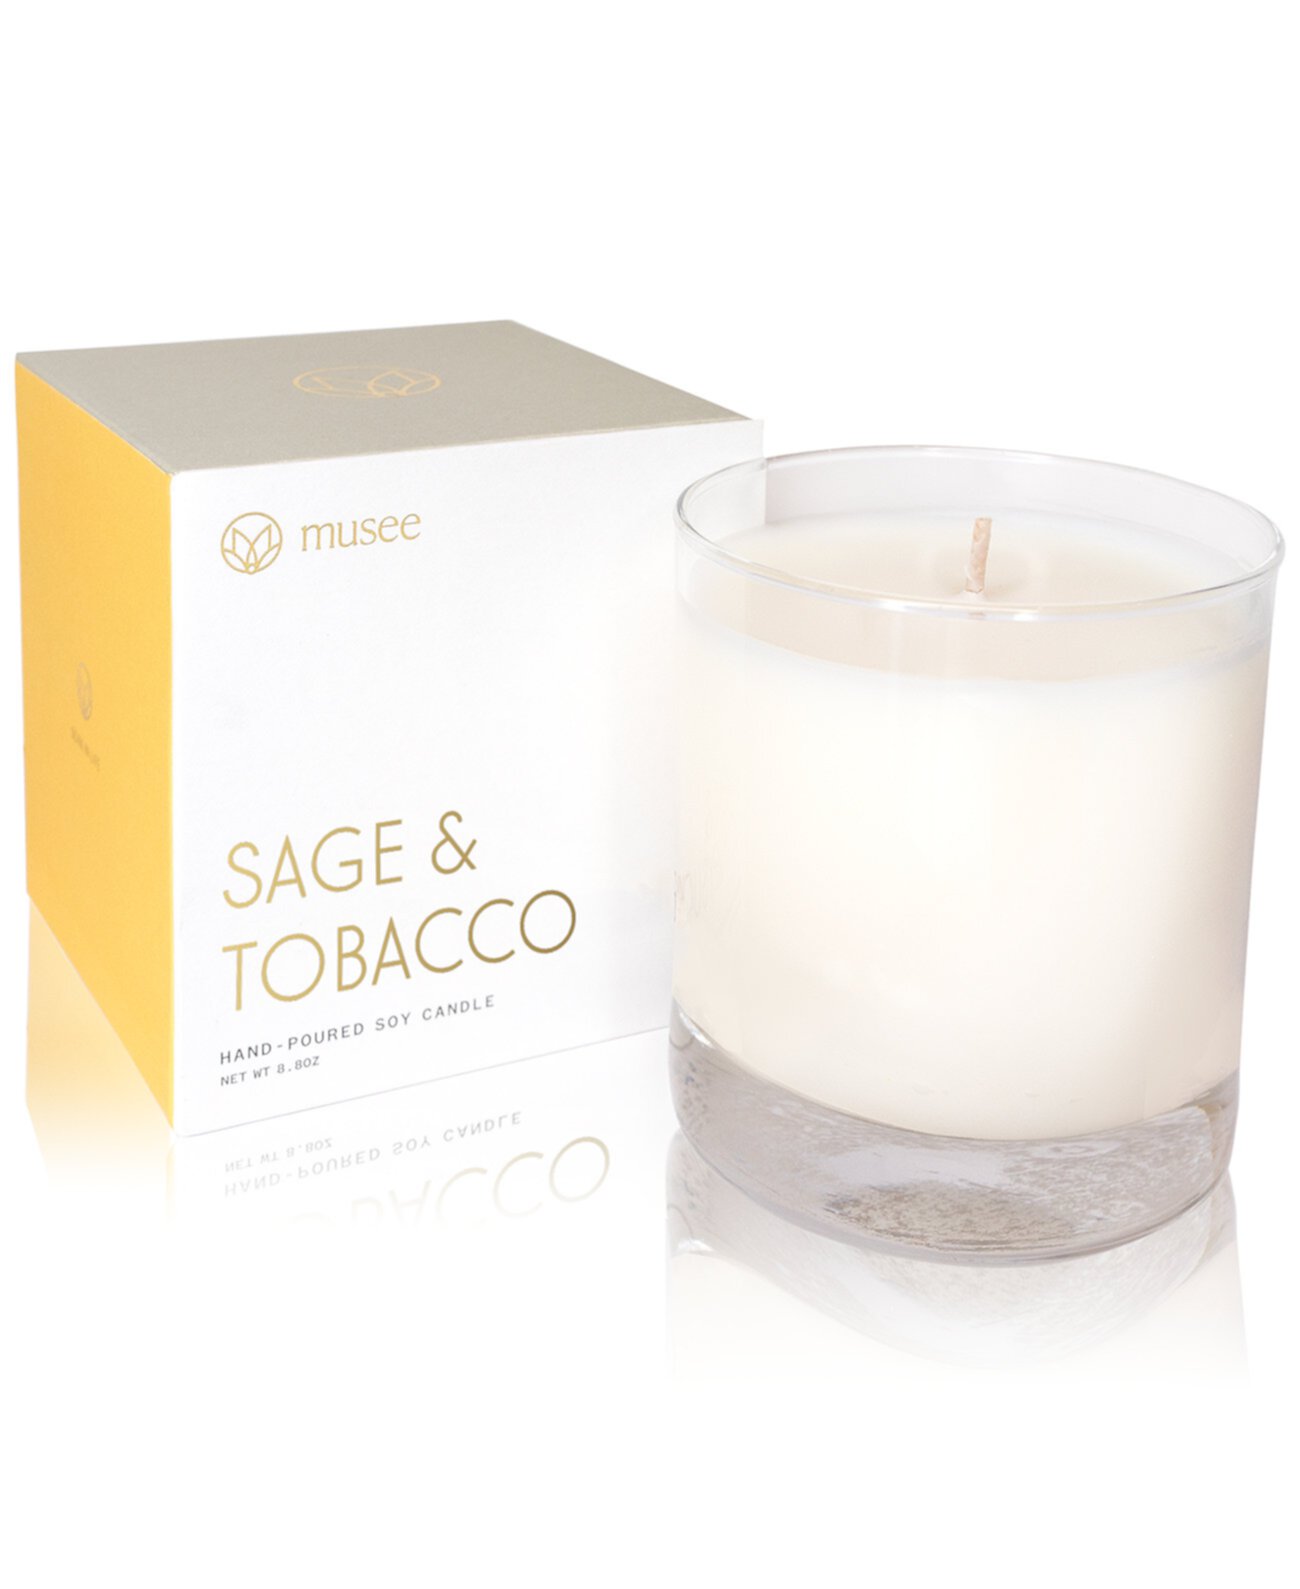 Соевая свеча с ручным литьем Sage & Tobacco, 8,8 унций. Musee